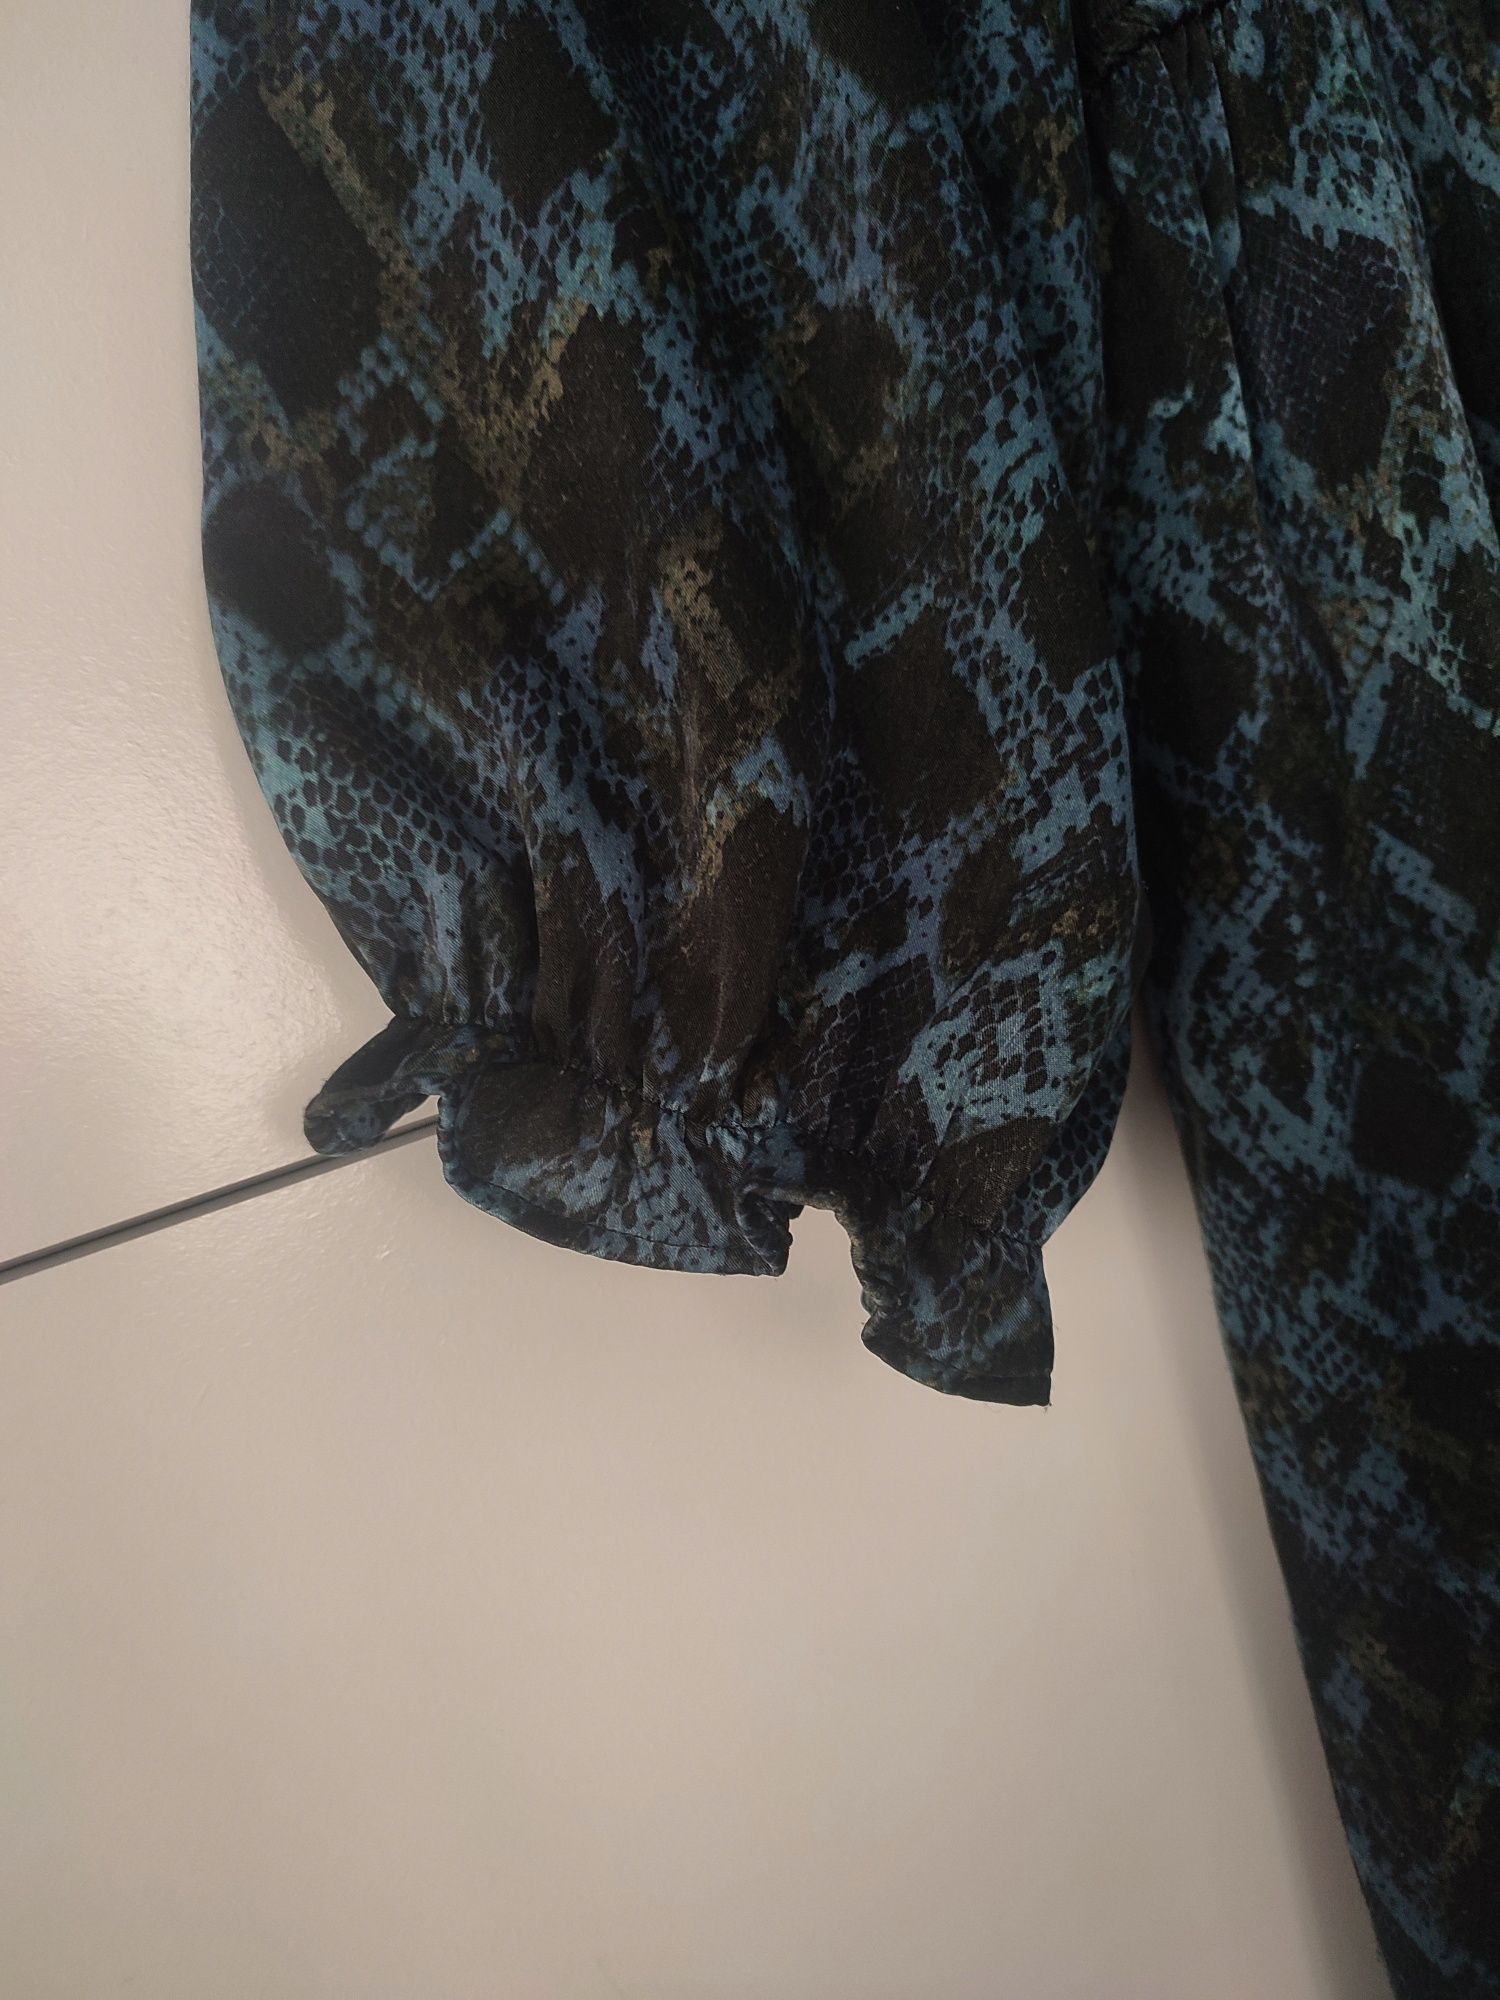 Sukienka maxi Zara niebieska wężowy wzór 34 XS 36 S